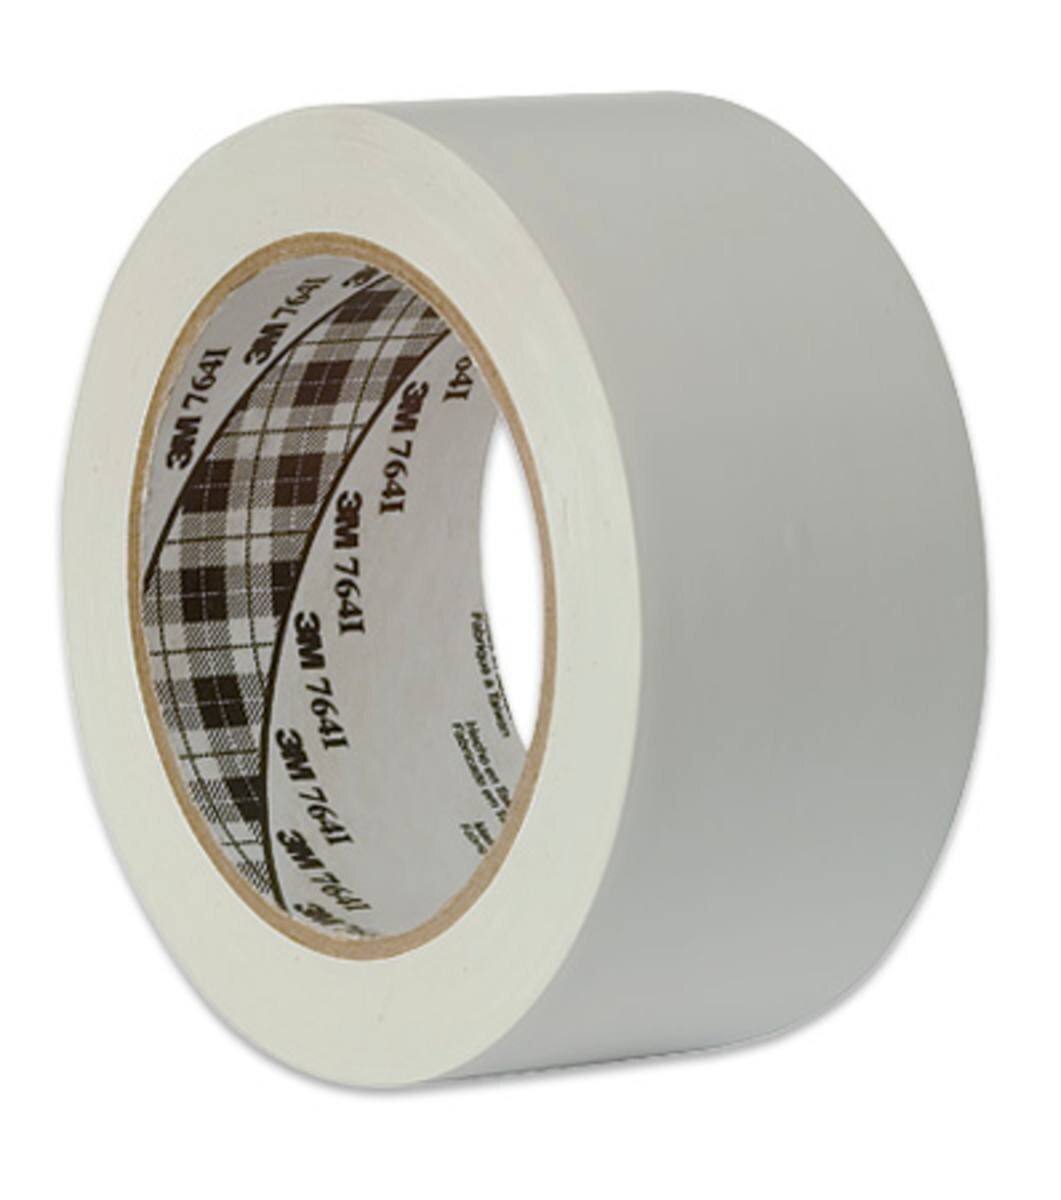 Nastro adesivo 3M multiuso in PVC 764, bianco, 50 mm x 33 m, confezionato singolarmente in un pratico imballaggio